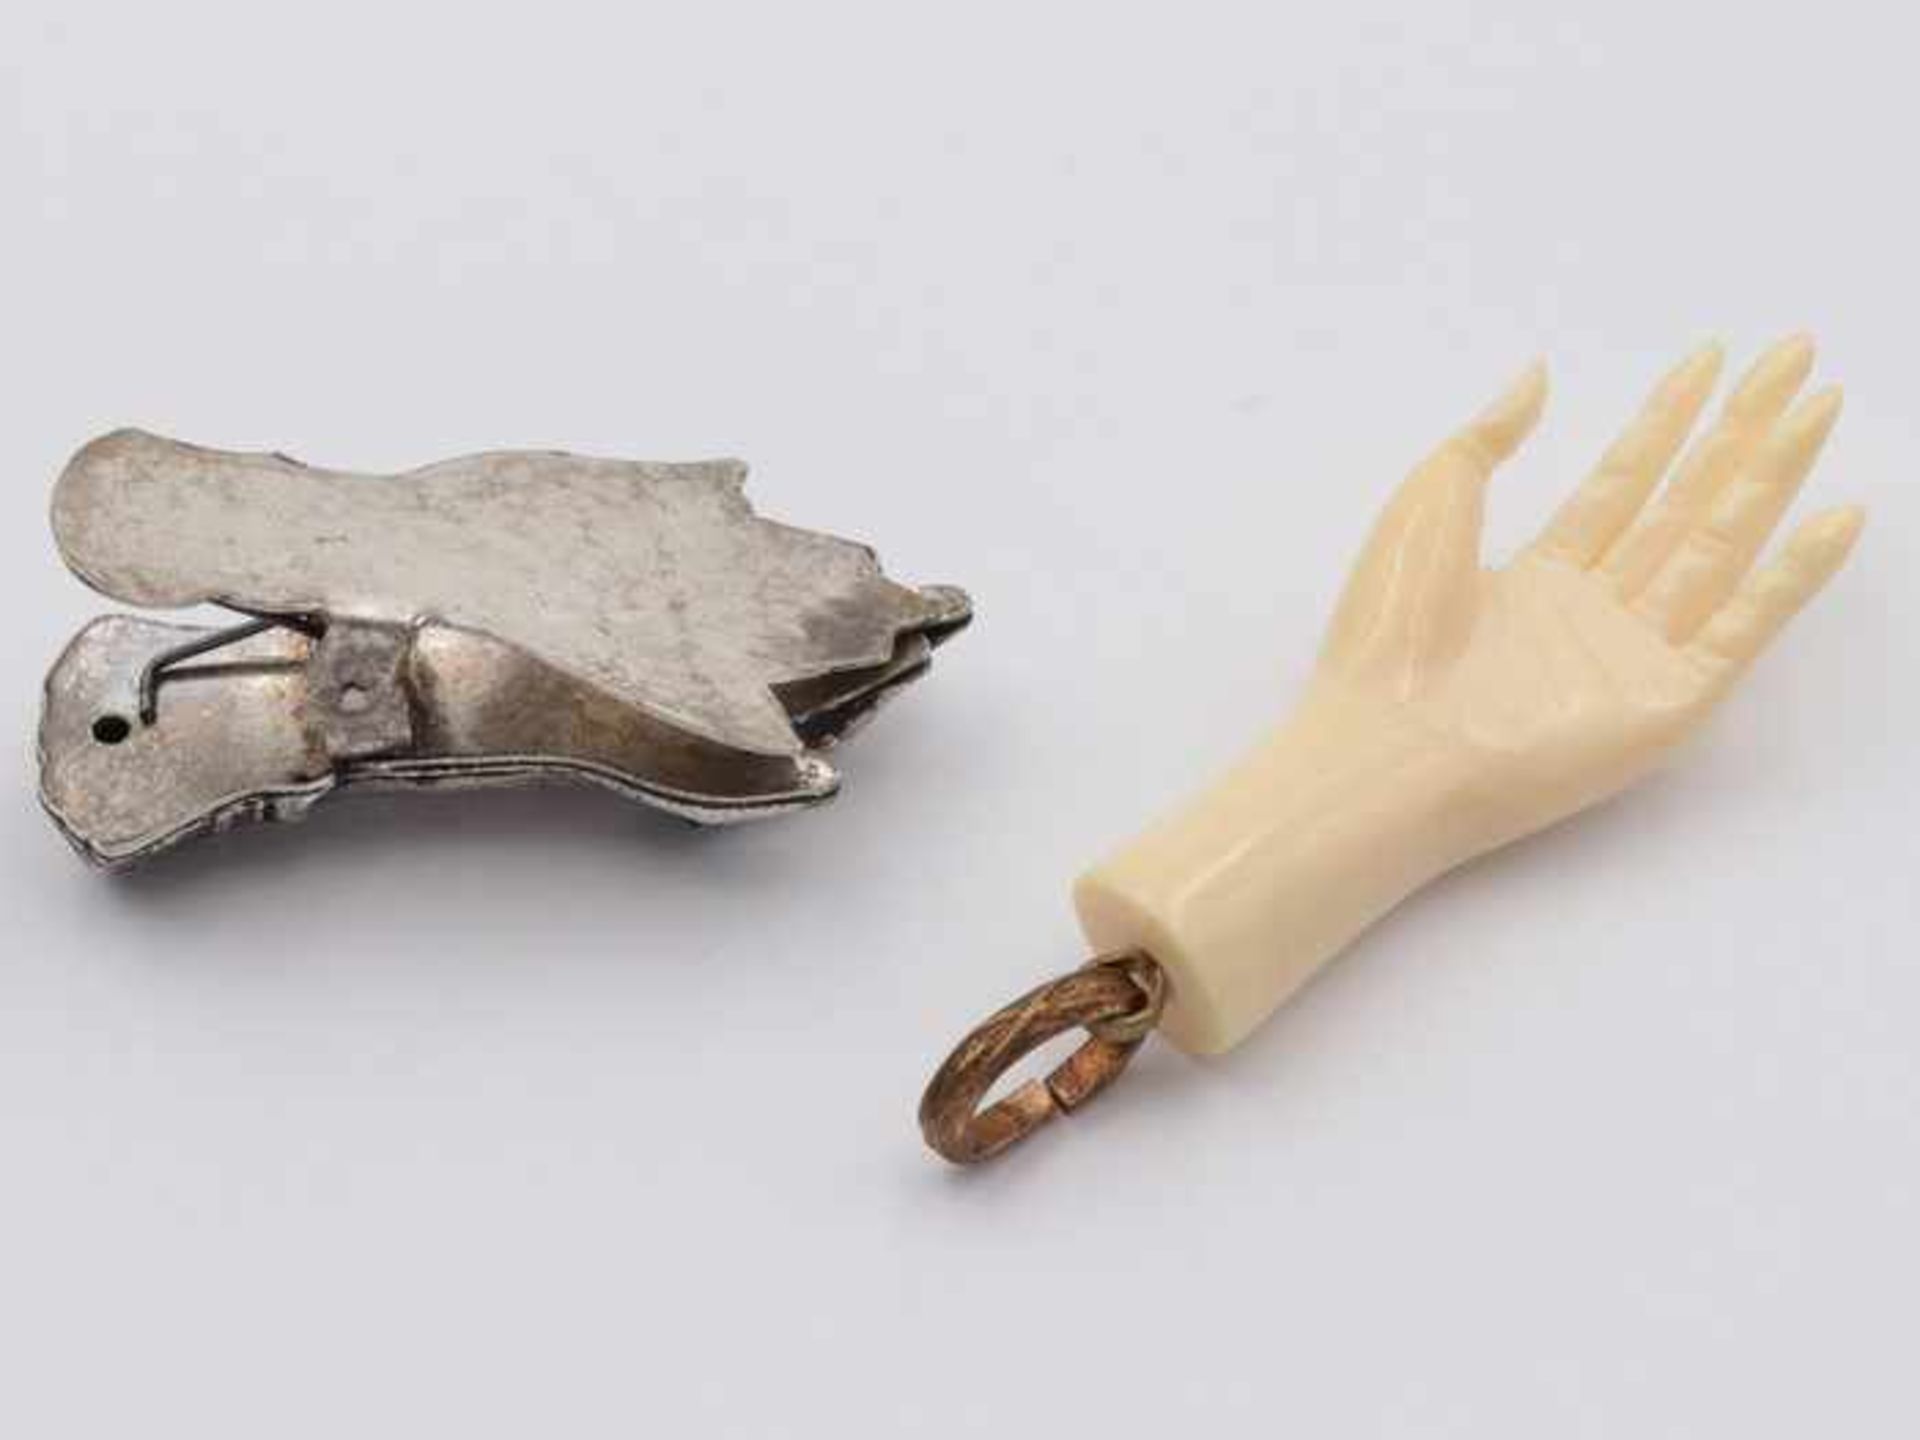 Anhänger - Beinum 1900, zart ausgeformte Hand, Bein, dazu 1x Clip, zarte Damenhand mit - Bild 2 aus 2